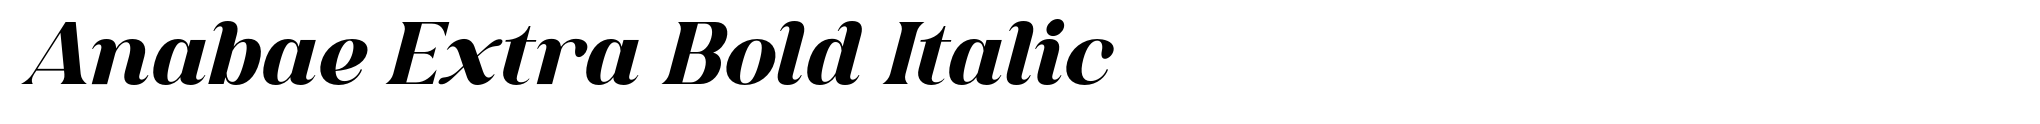 Anabae Extra Bold Italic image